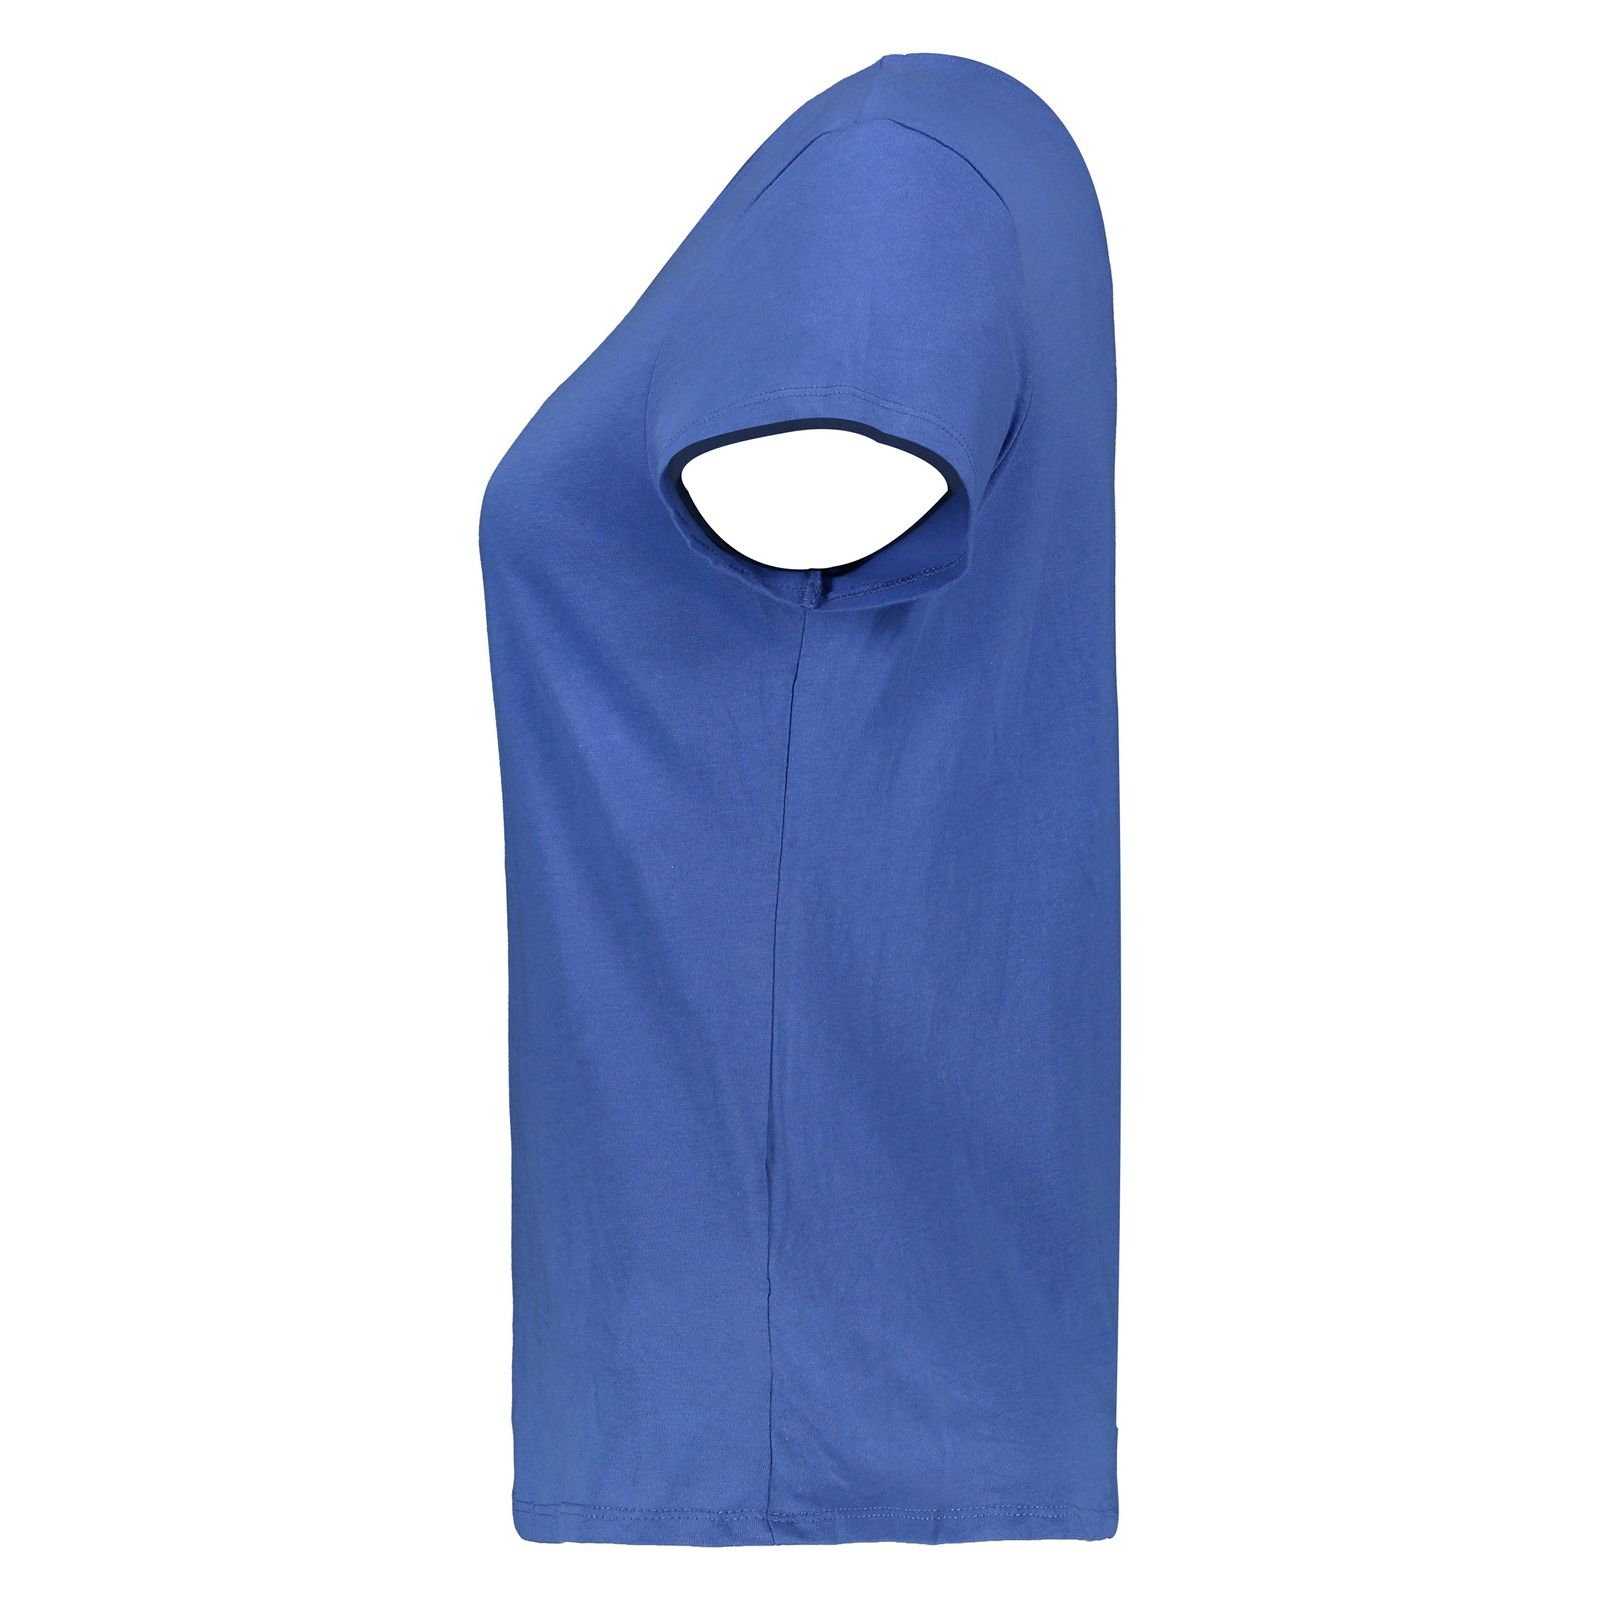 تی شرت زنانه اسپرینگ فیلد مدل 1383531-Blue